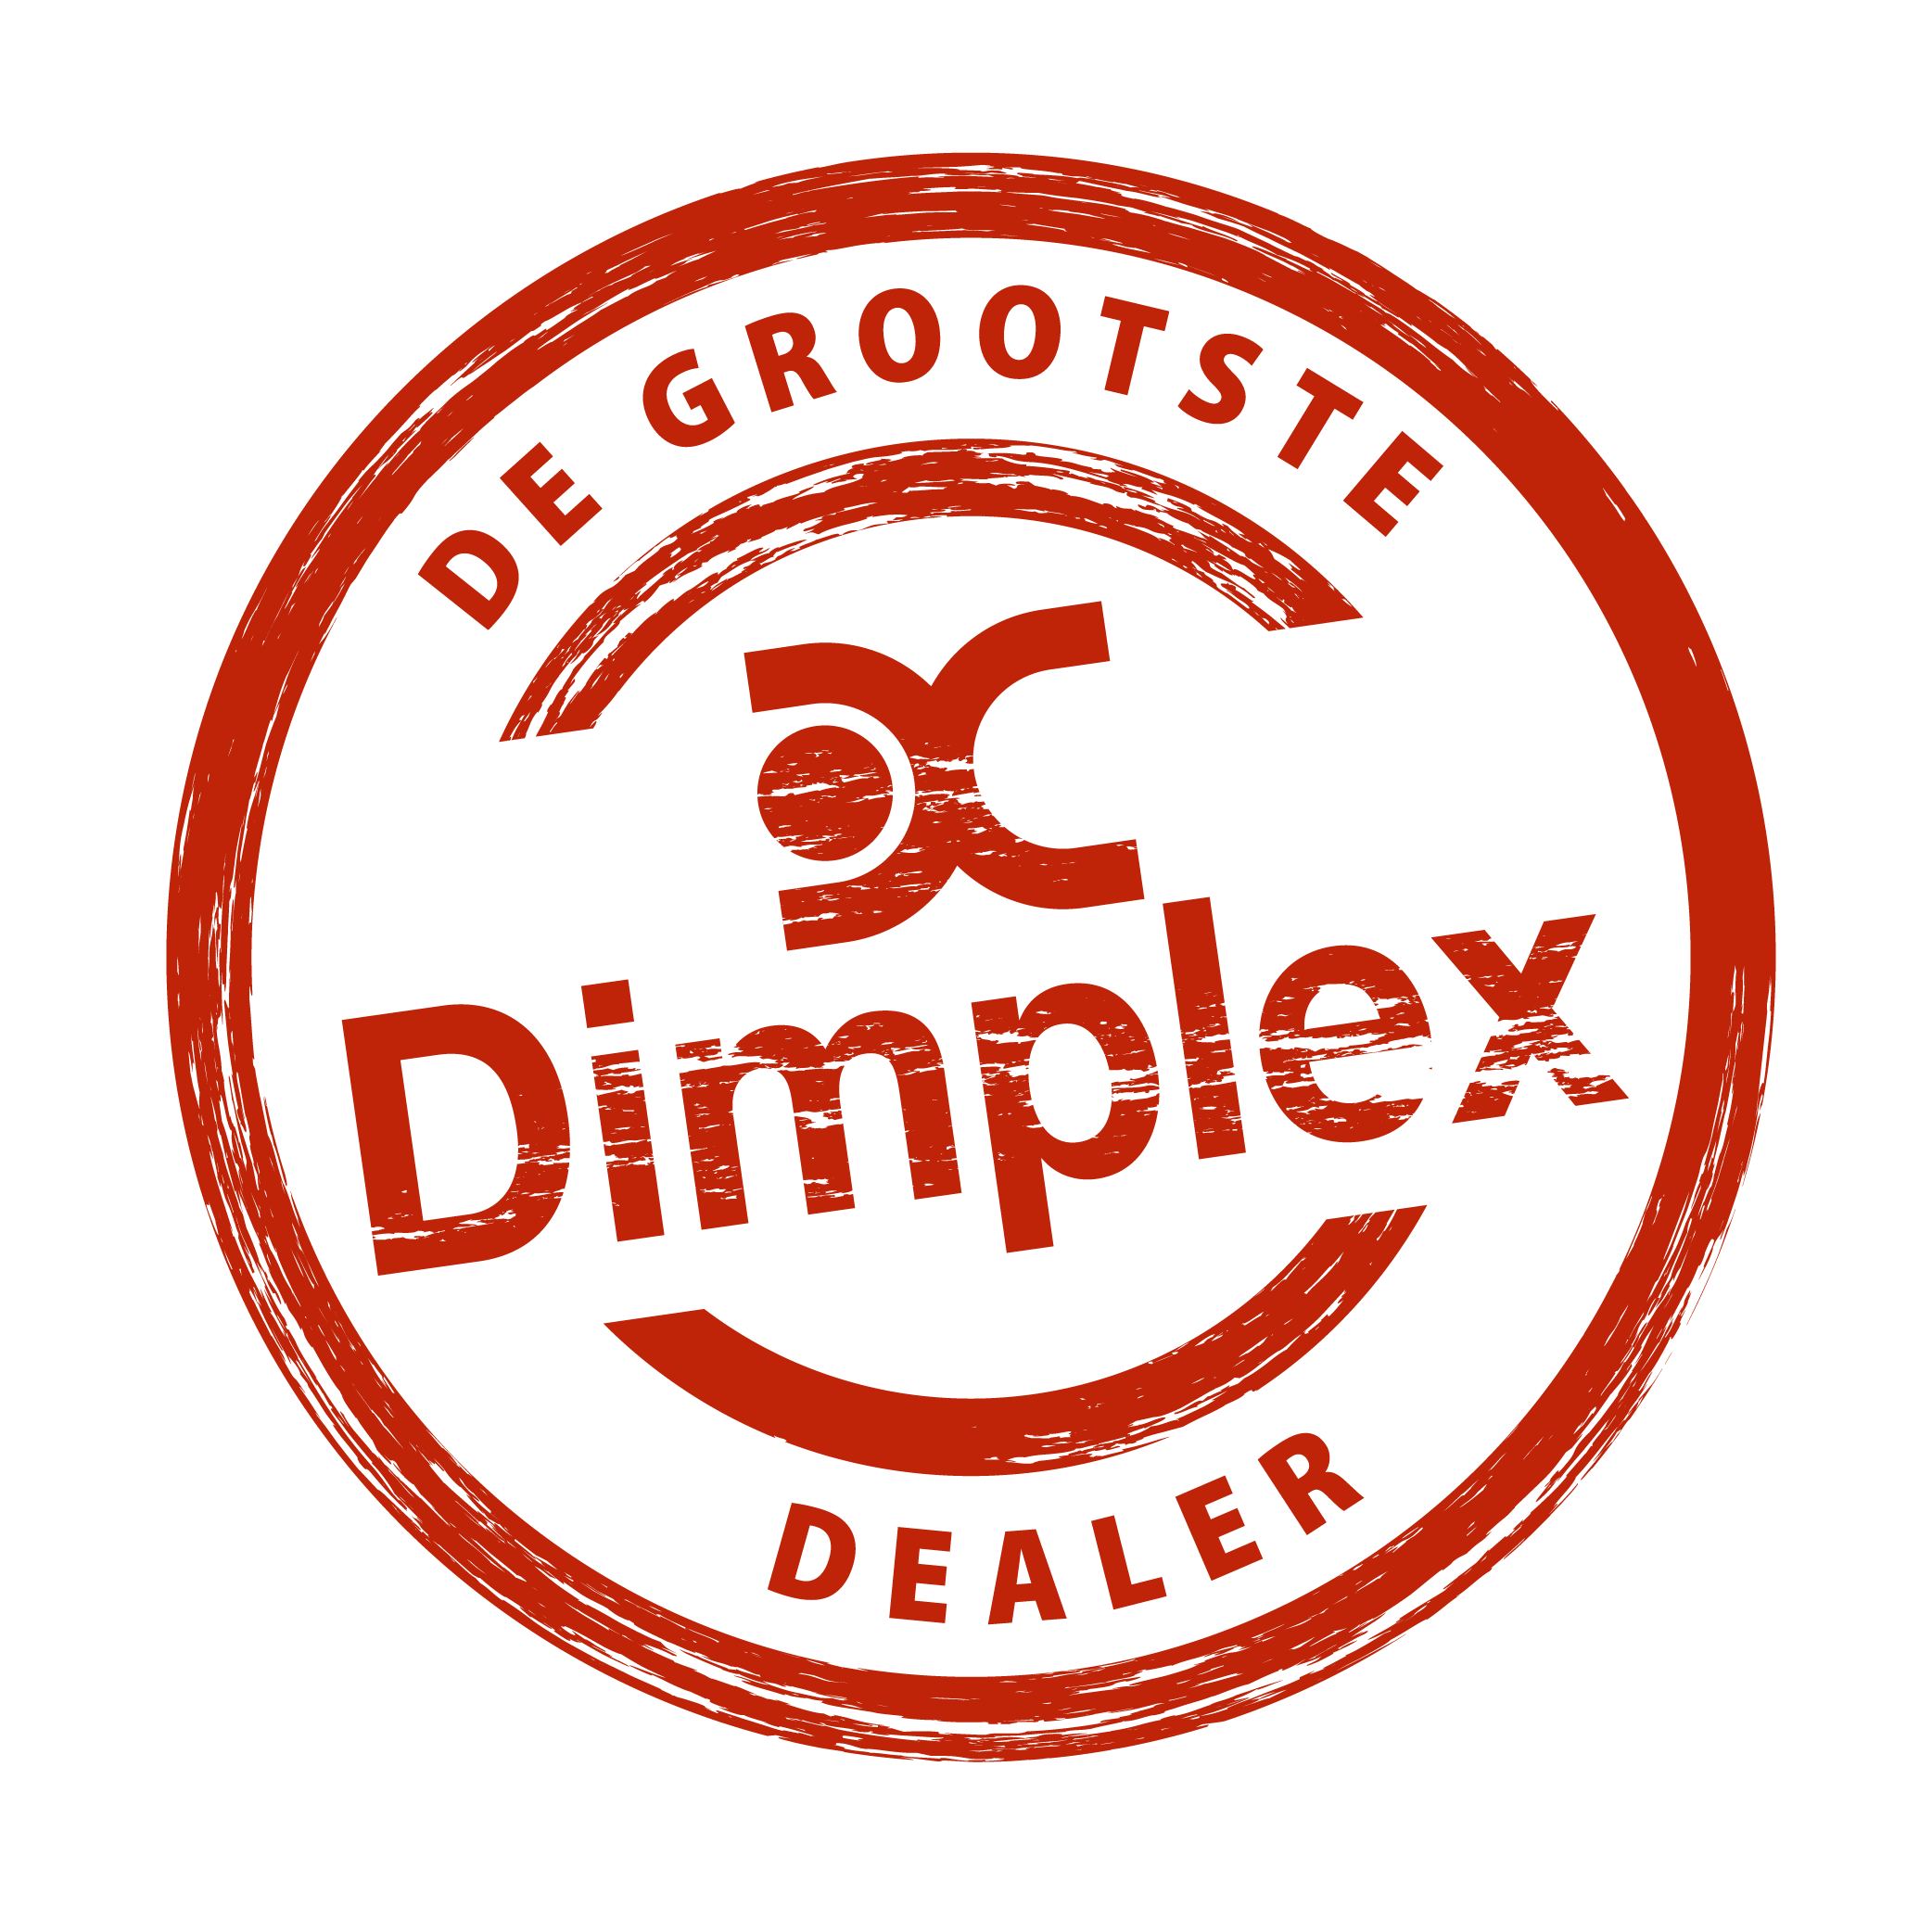 Grootste Dimplex Dealer sticker